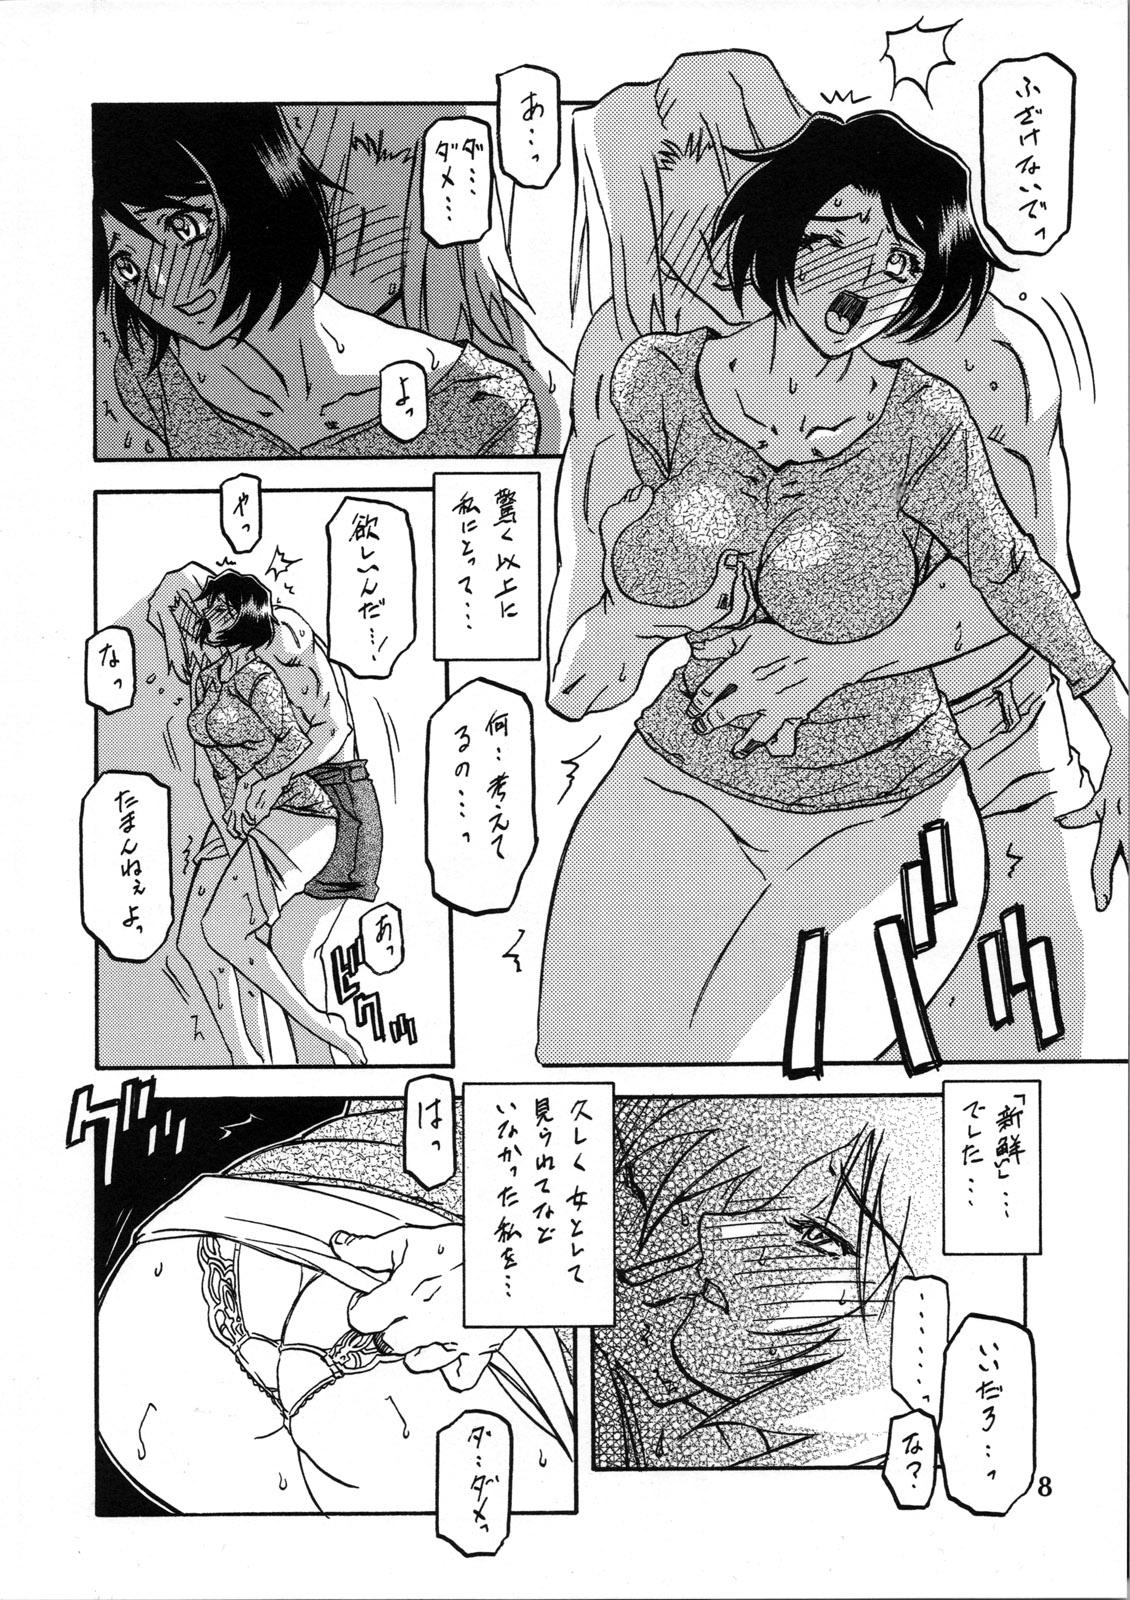 Curvy Akebi no Mi - Satomi Katei - Akebi no mi Teenage Porn - Page 7